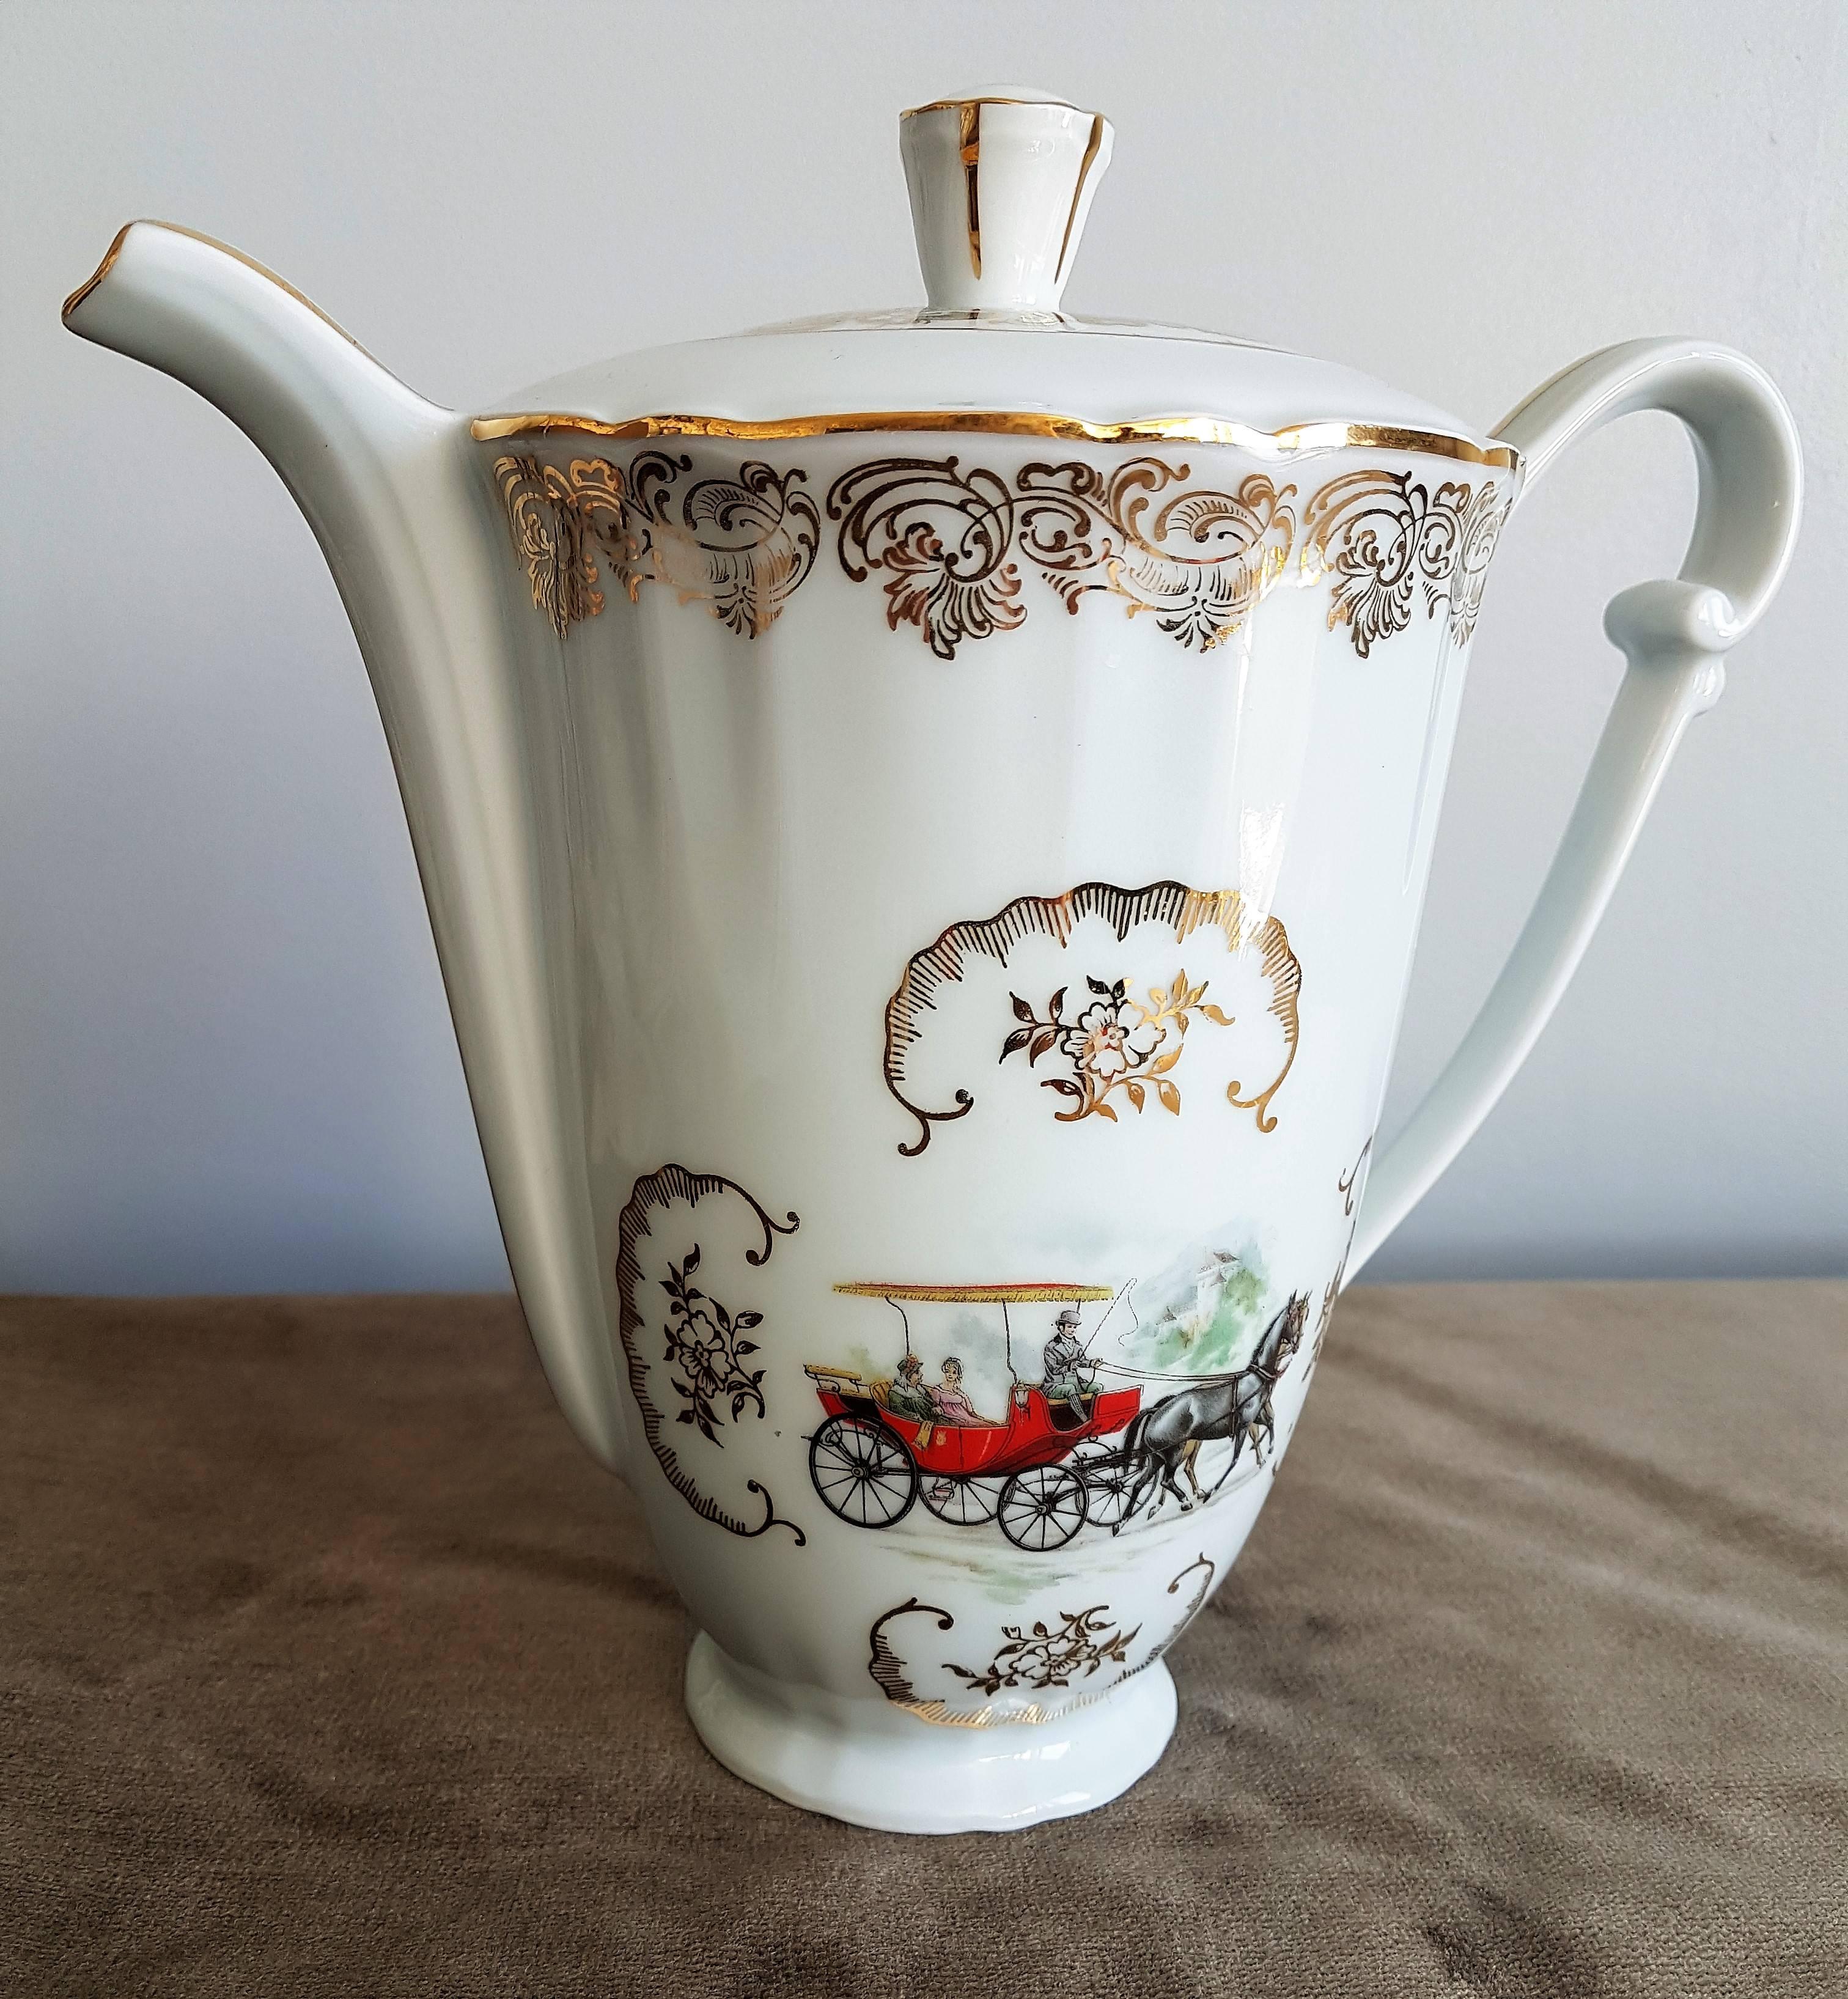 Feines klassisches italienisches weißes Porzellan mit Golddekor, das elegante Kutschen des 19. Jahrhunderts und elegante Paare darstellt.
Set aus neun Teilen: Eine Teekanne, ein Milchkännchen, eine Zuckerdose und sechs Tassen und Untertassen.